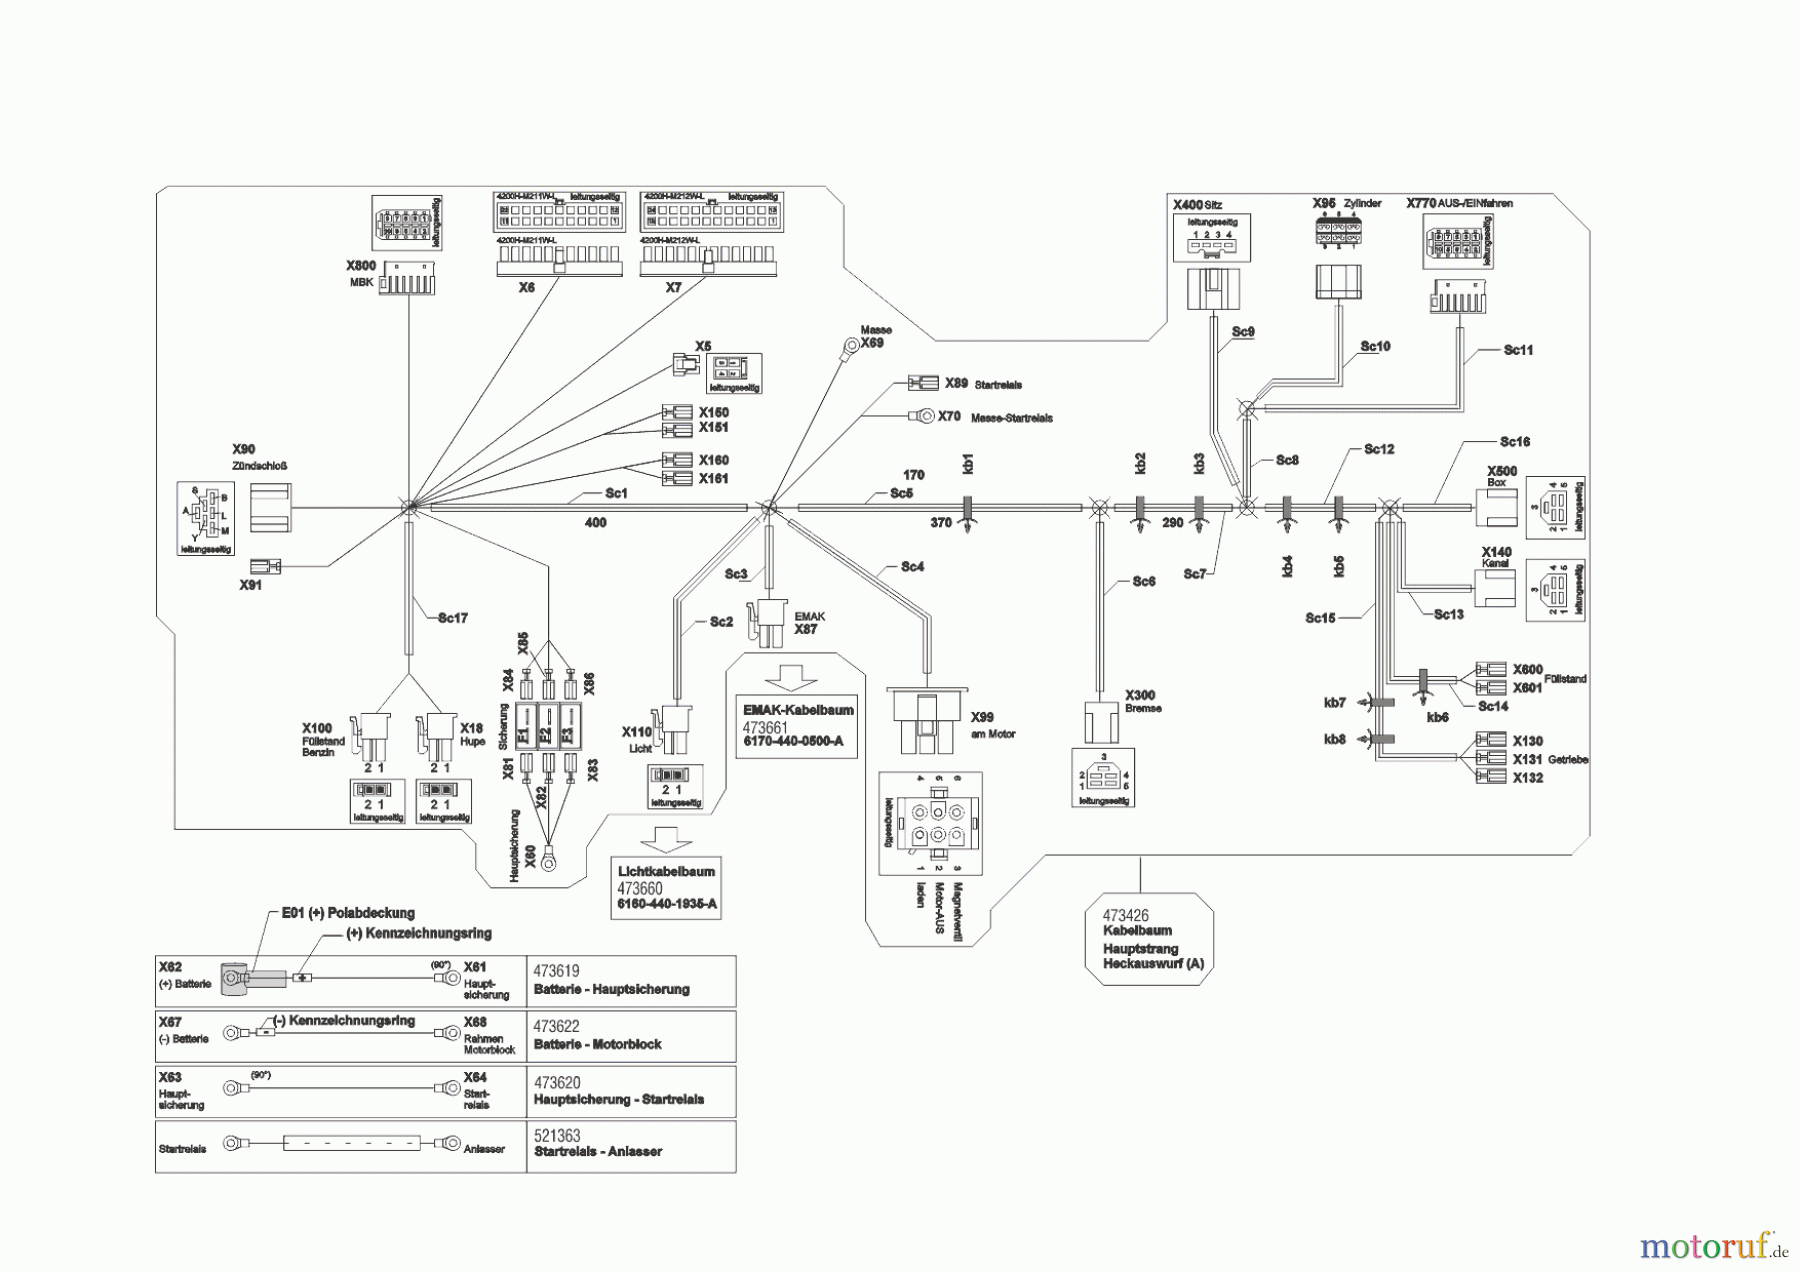  Powerline Gartentechnik Rasentraktor T20-105.4 HDE V2  ab 02/2019 Seite 10